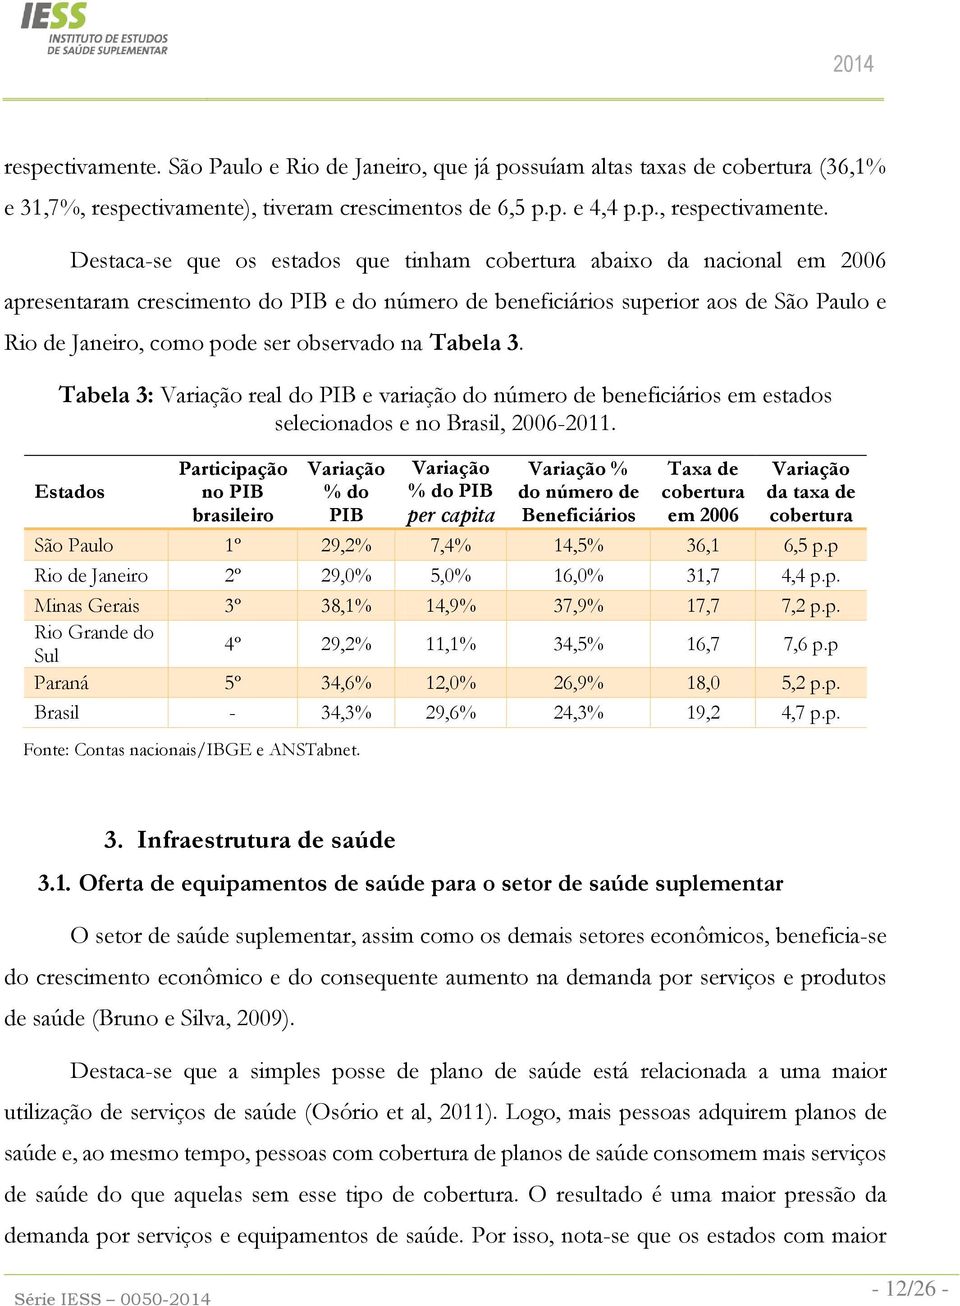 Destaca-se que os estados que tinham cobertura abaixo da nacional em 2006 apresentaram crescimento do PIB e do número de beneficiários superior aos de São Paulo e Rio de Janeiro, como pode ser